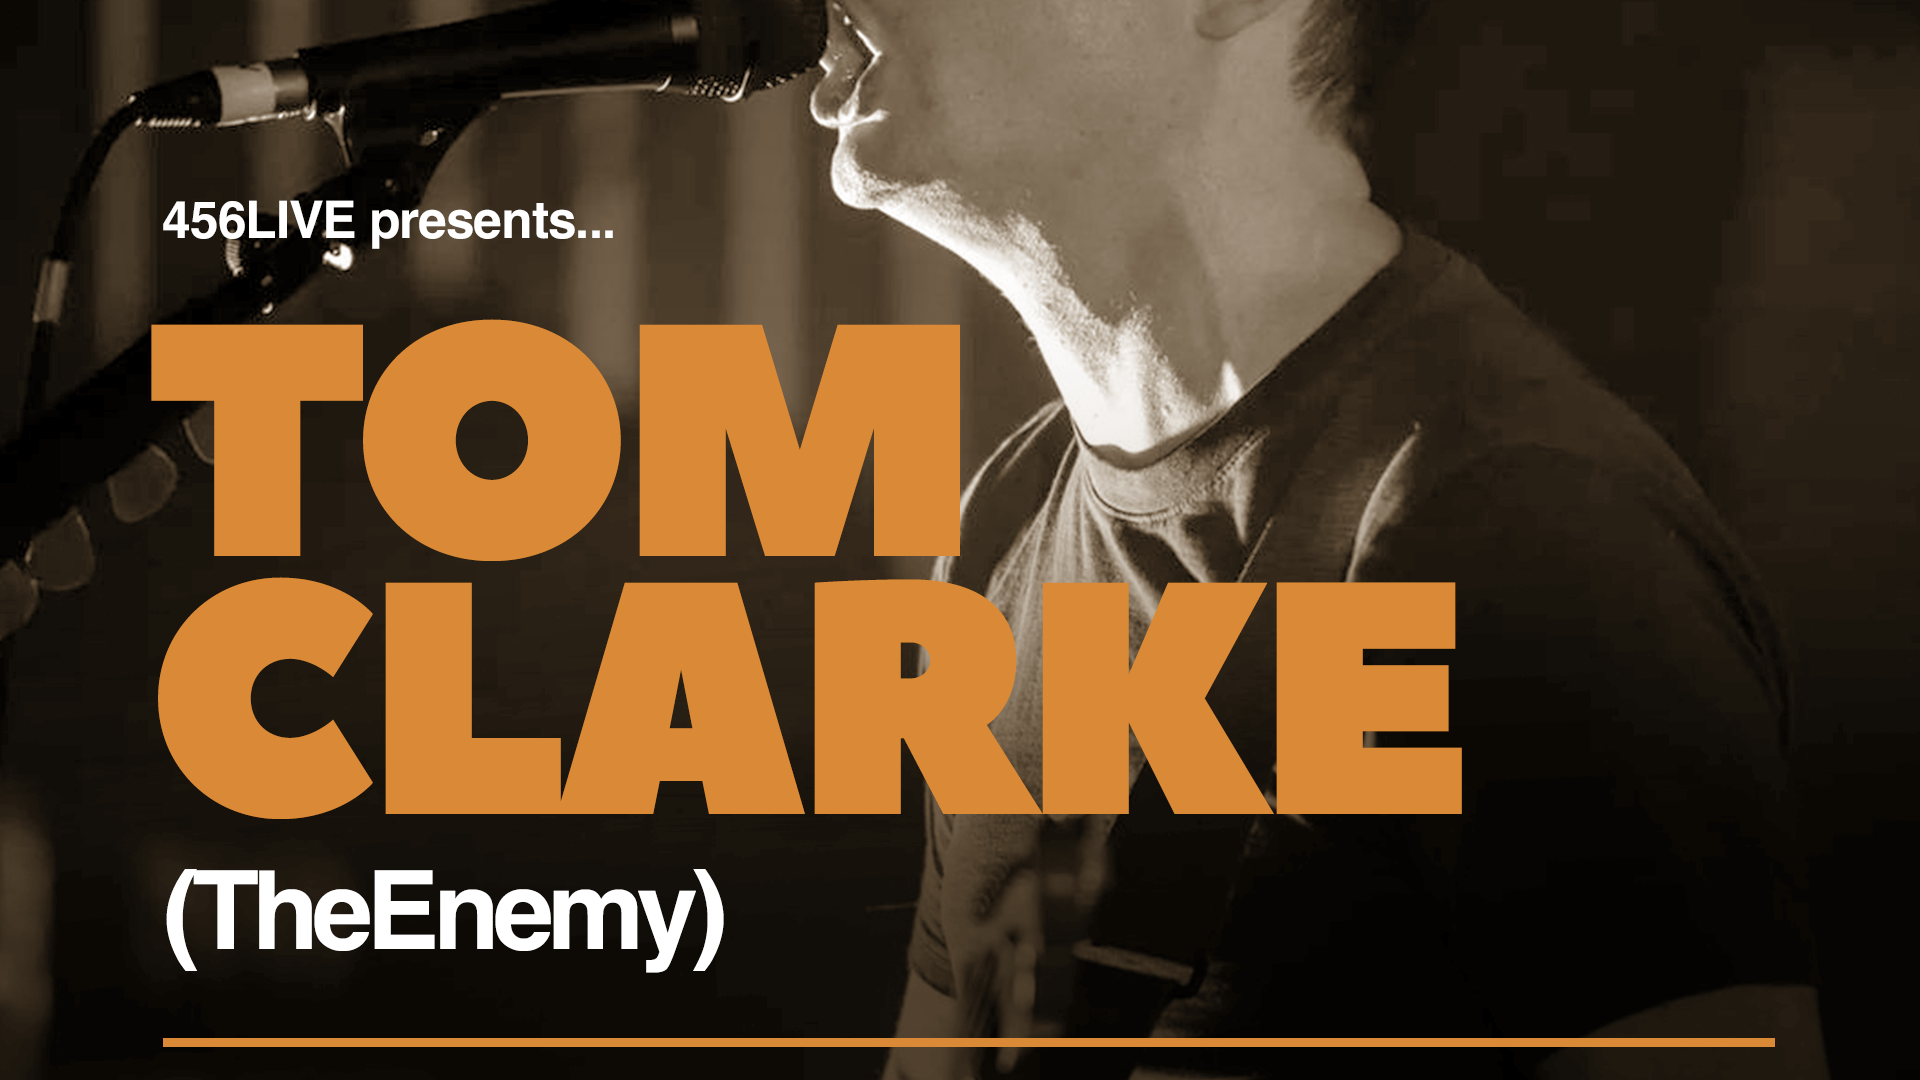 Tom Clarke | Newcastle